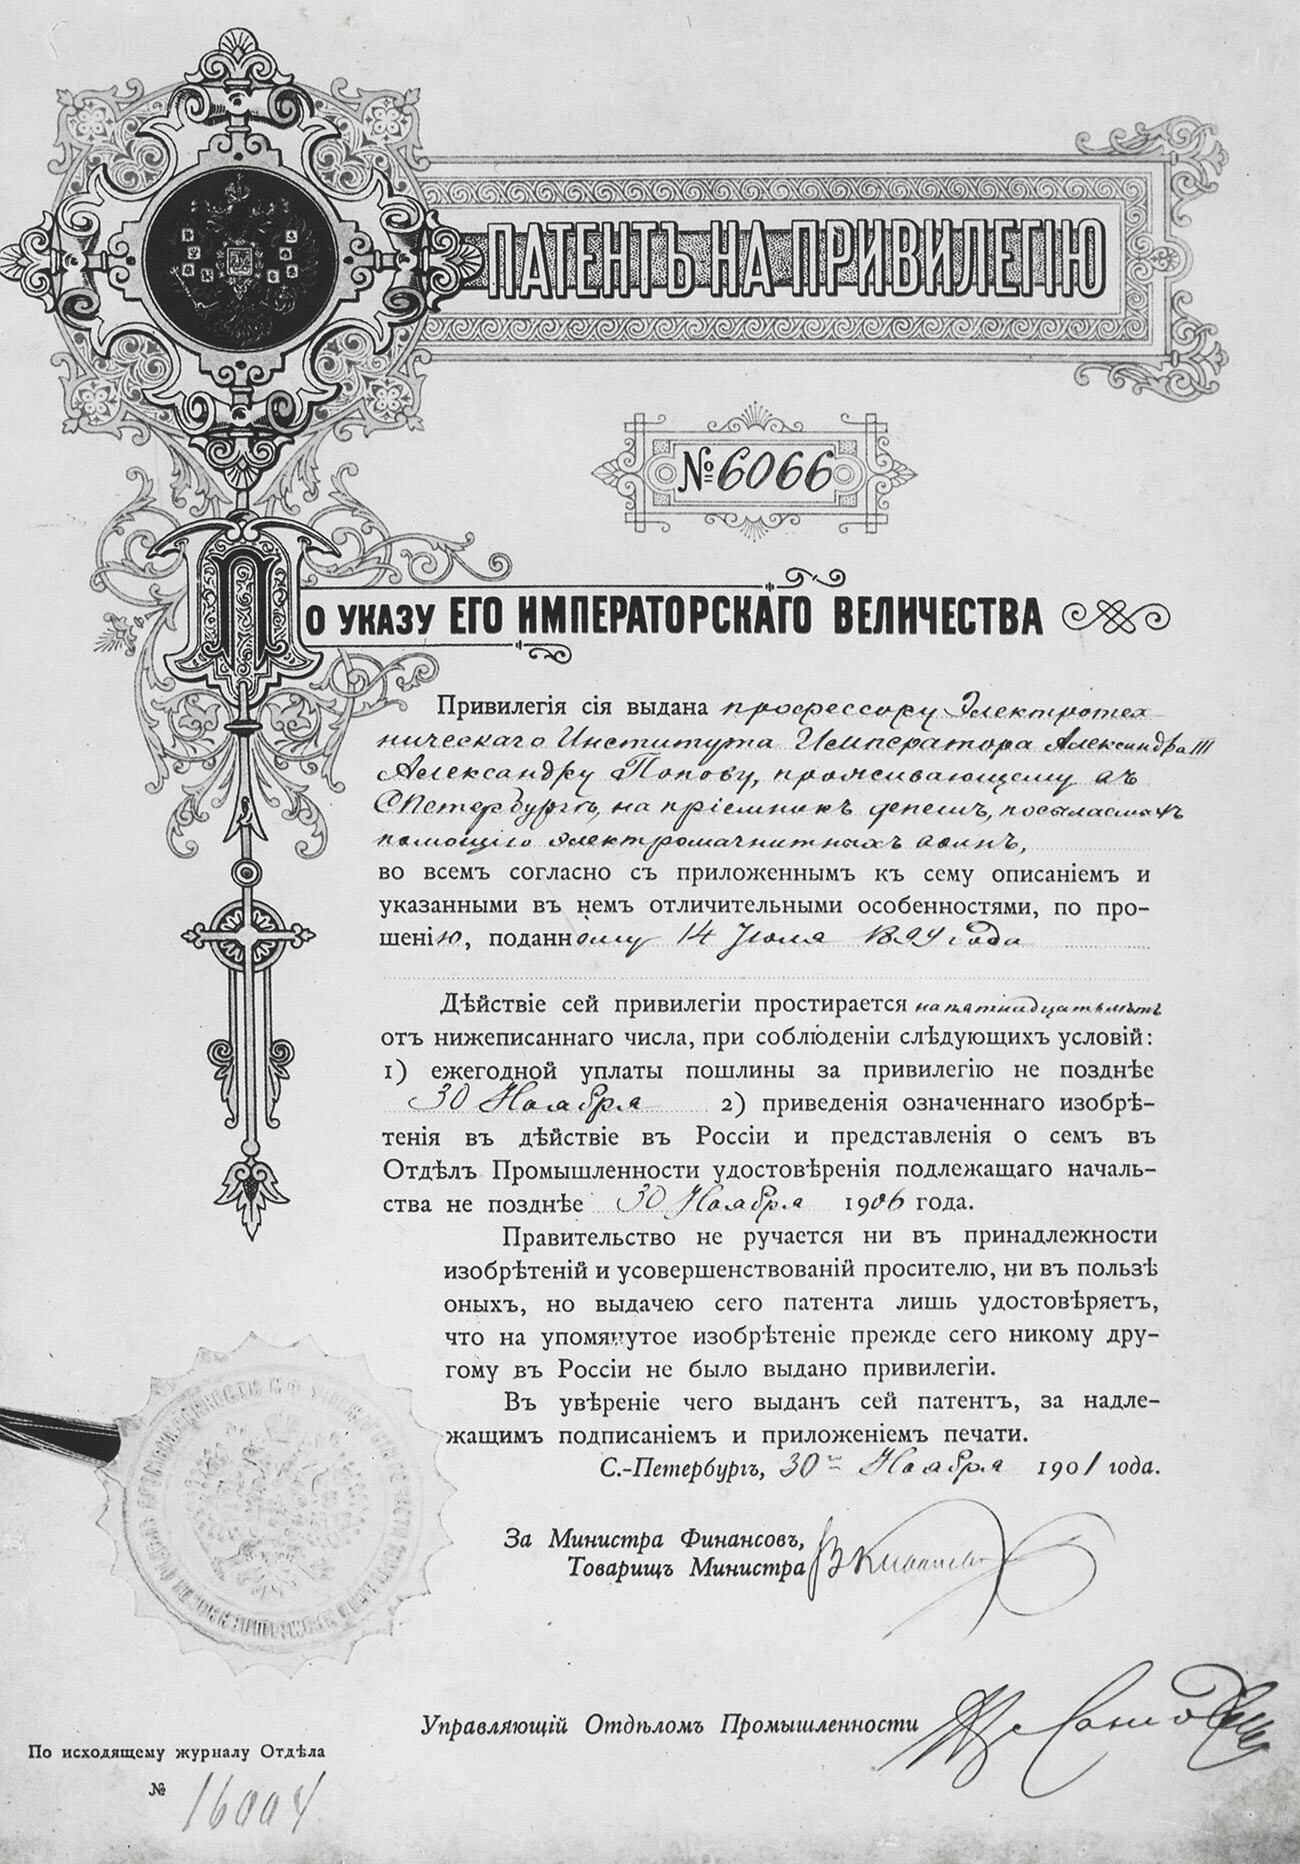 Патент № 6066 на Попов от 1901 г.